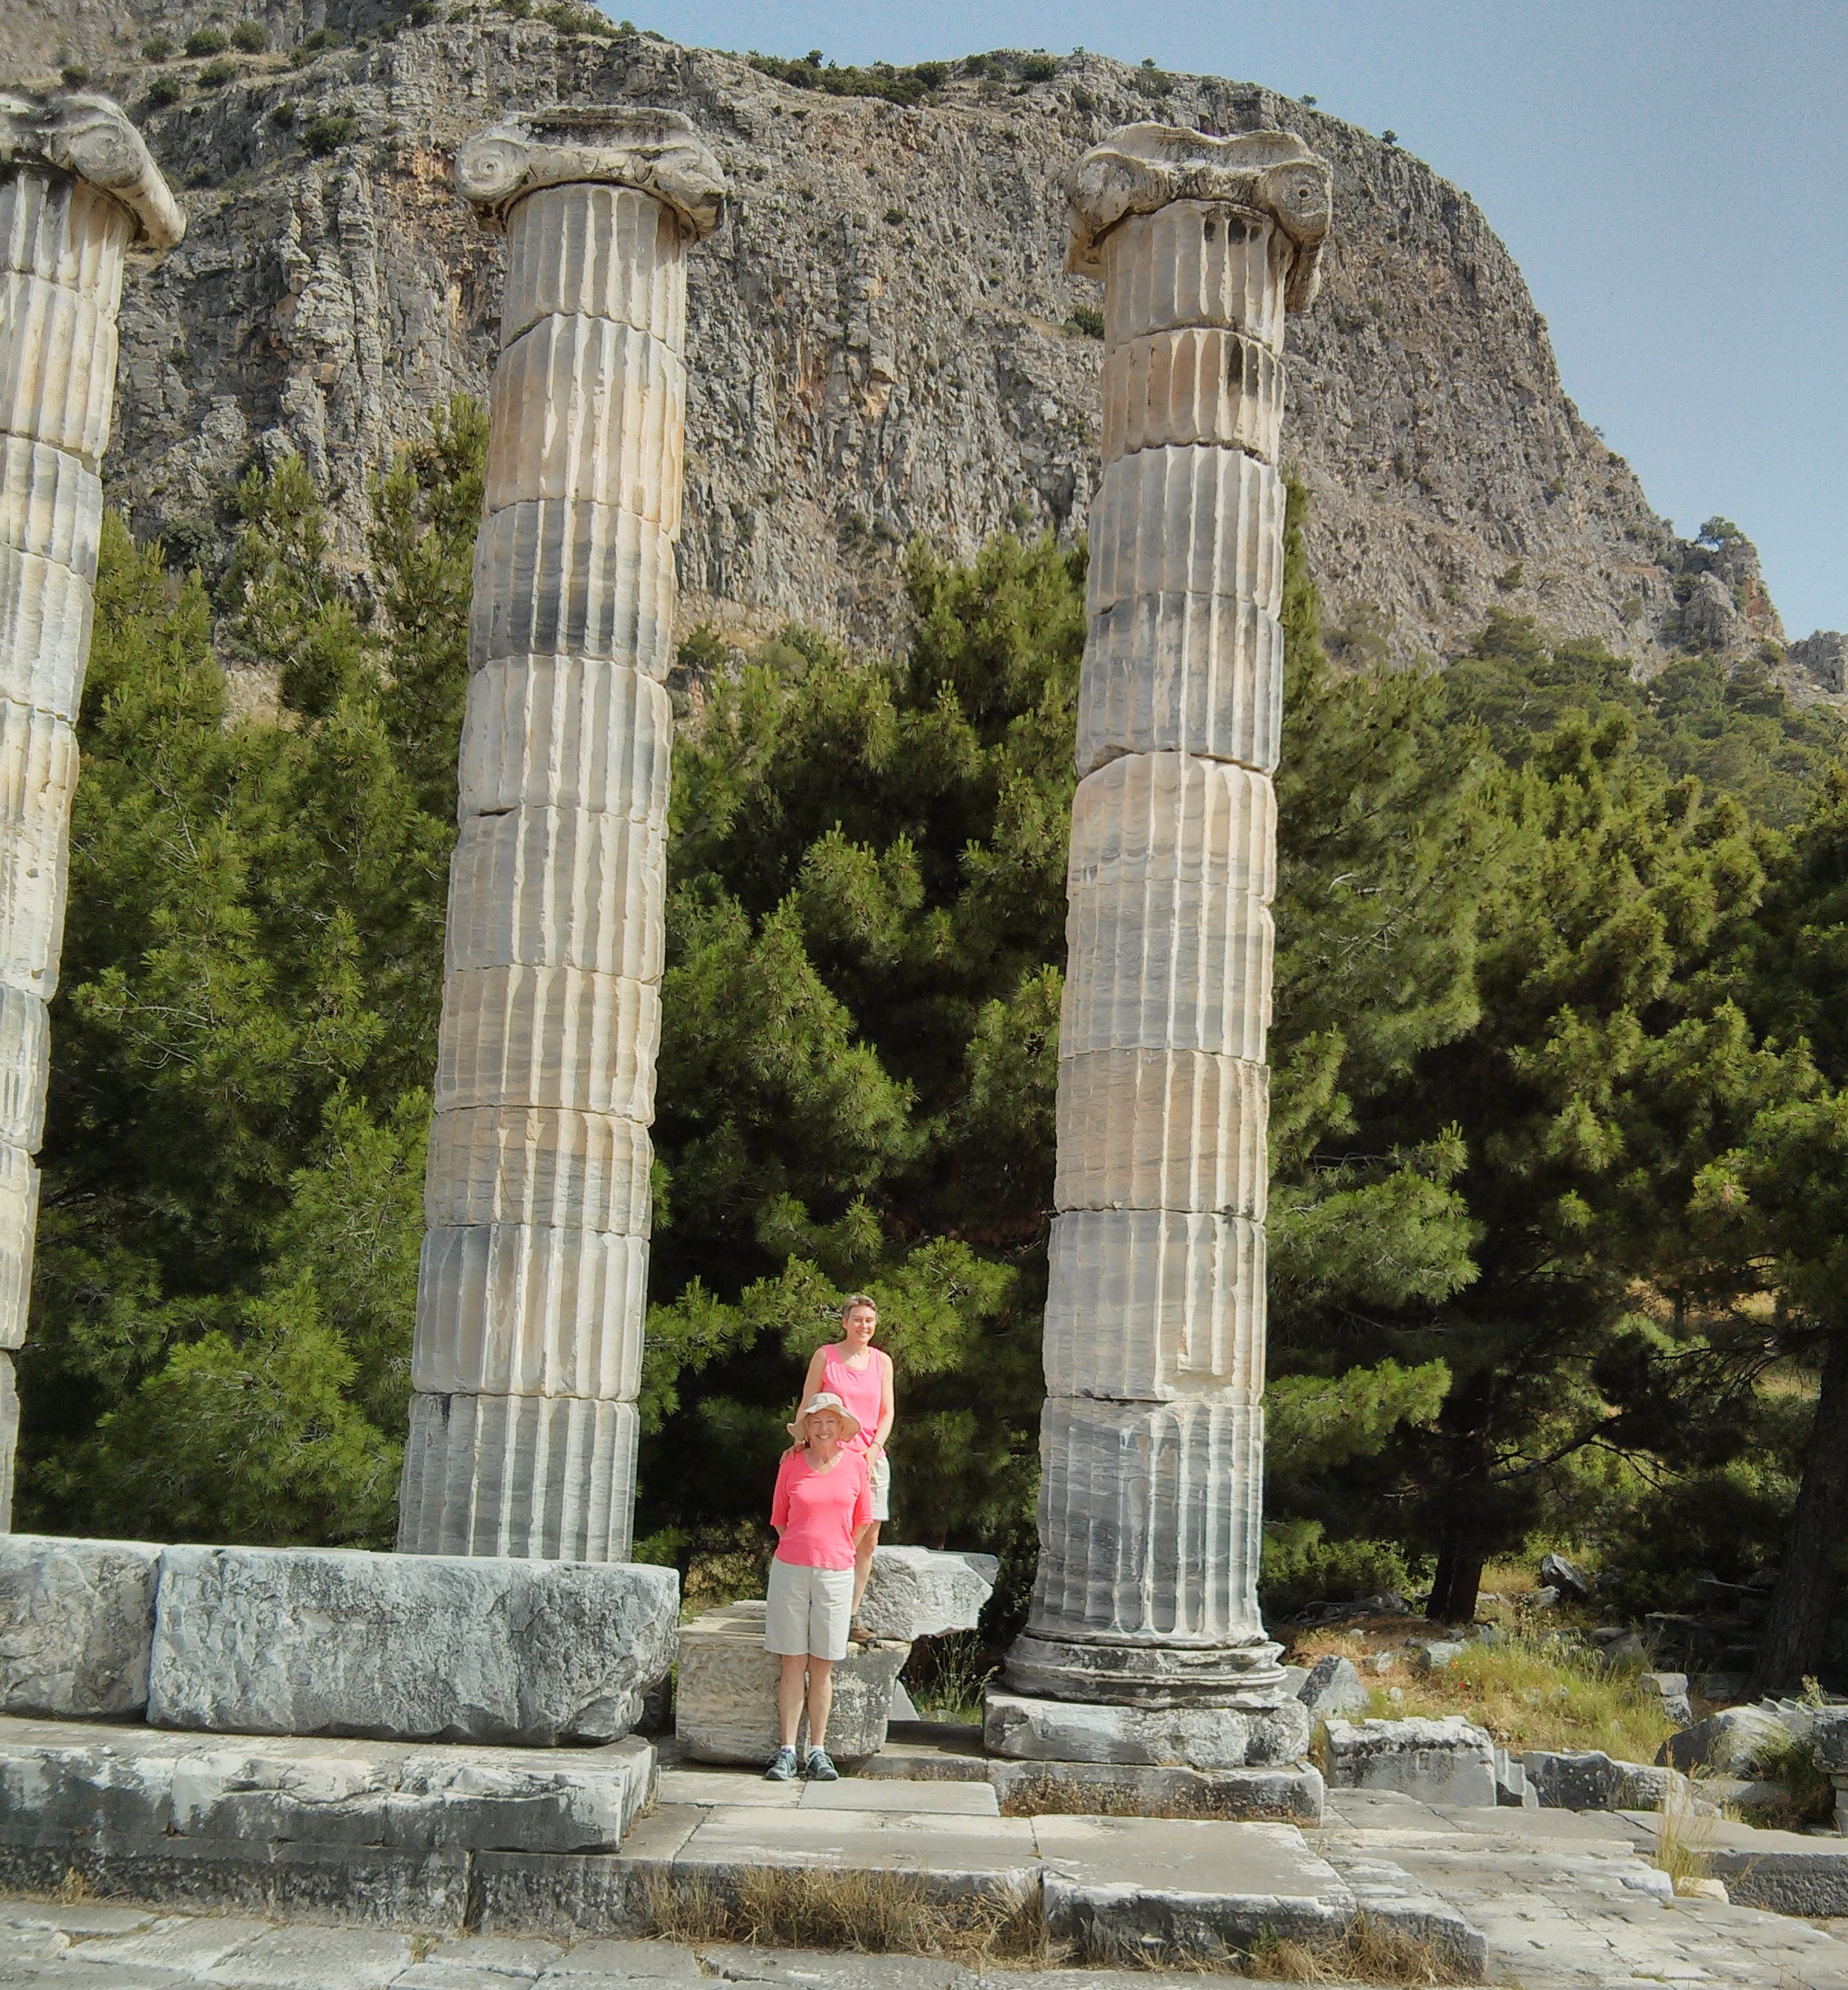 Linda Scheffer and Meg Gerken at Temple of Athena, Priene, Turkey